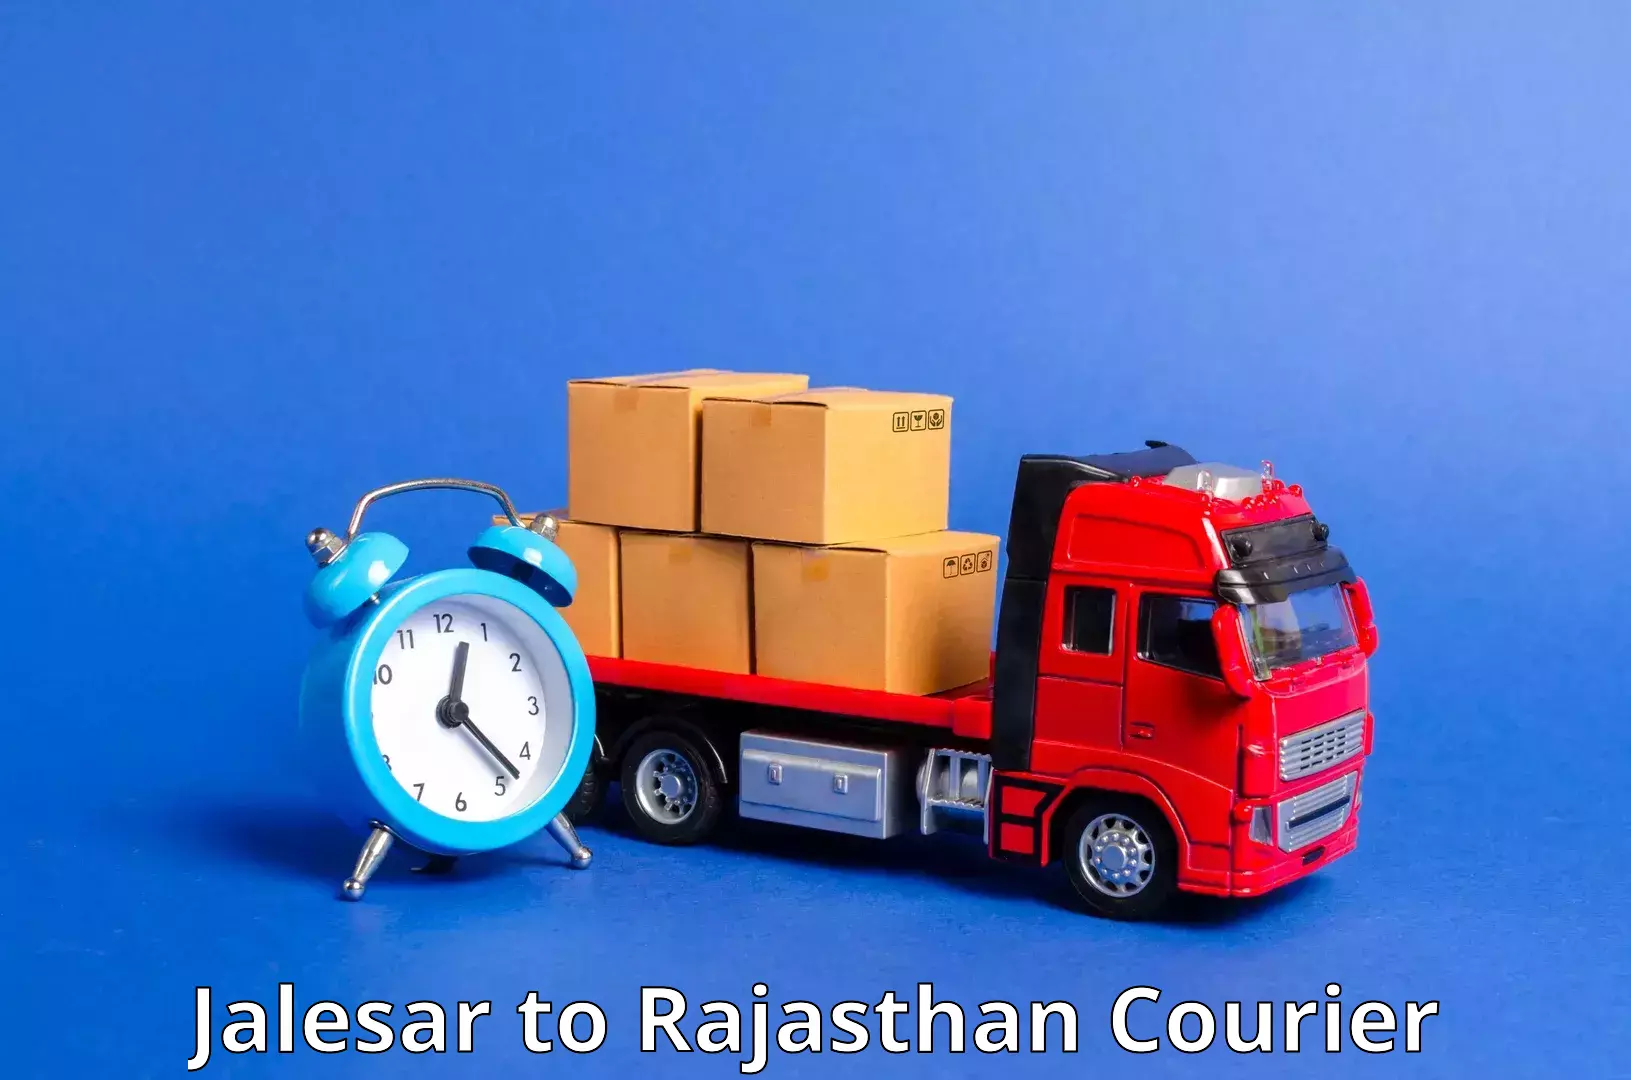 Efficient order fulfillment Jalesar to Mandalgarh